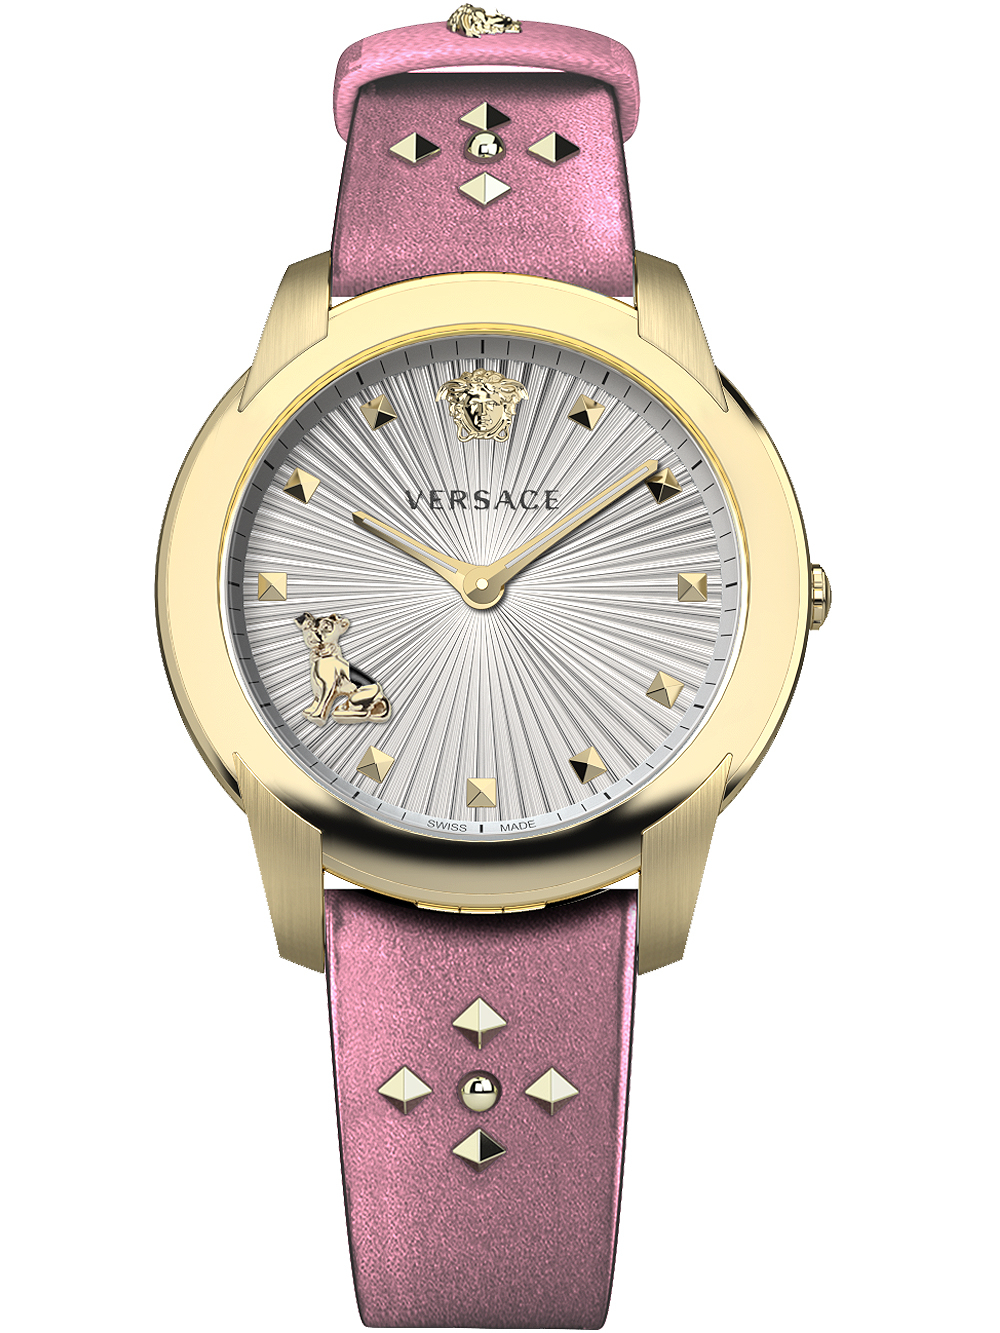 Dámské hodinky Versace VELR01219 Audrey